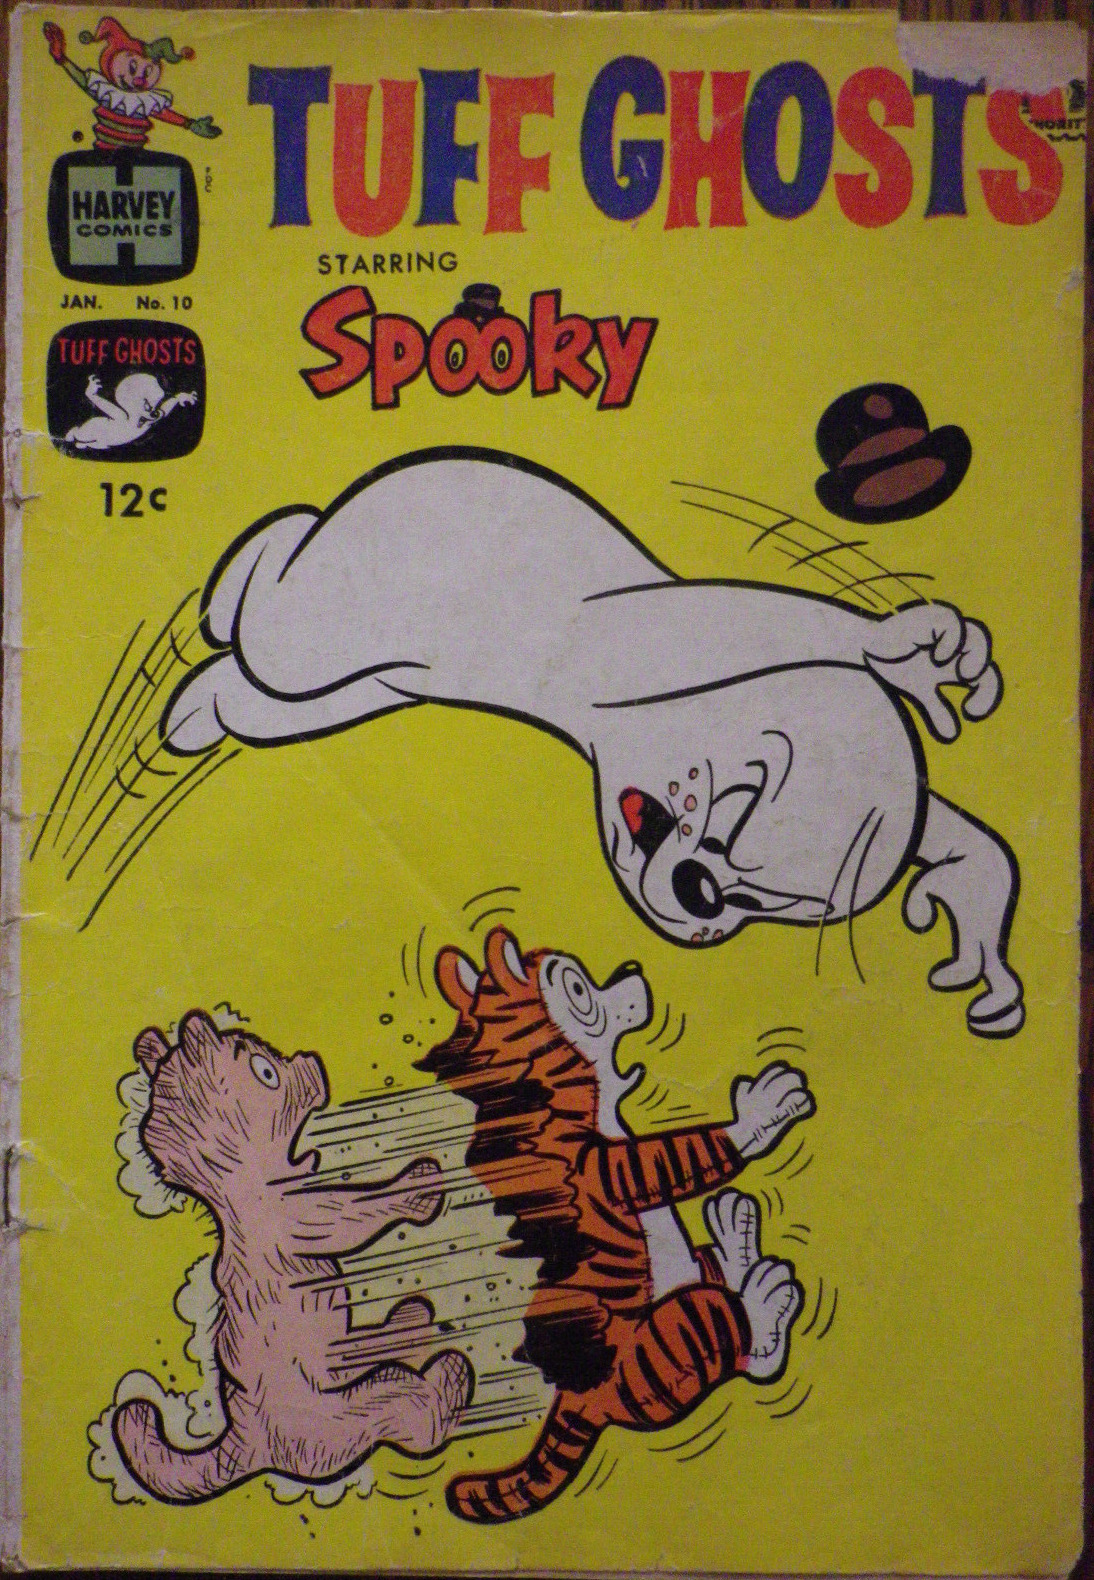 Tuff Ghosts Starring Spooky #10 - Jan 1964 - Harvey Comics - VERY NICE - Look